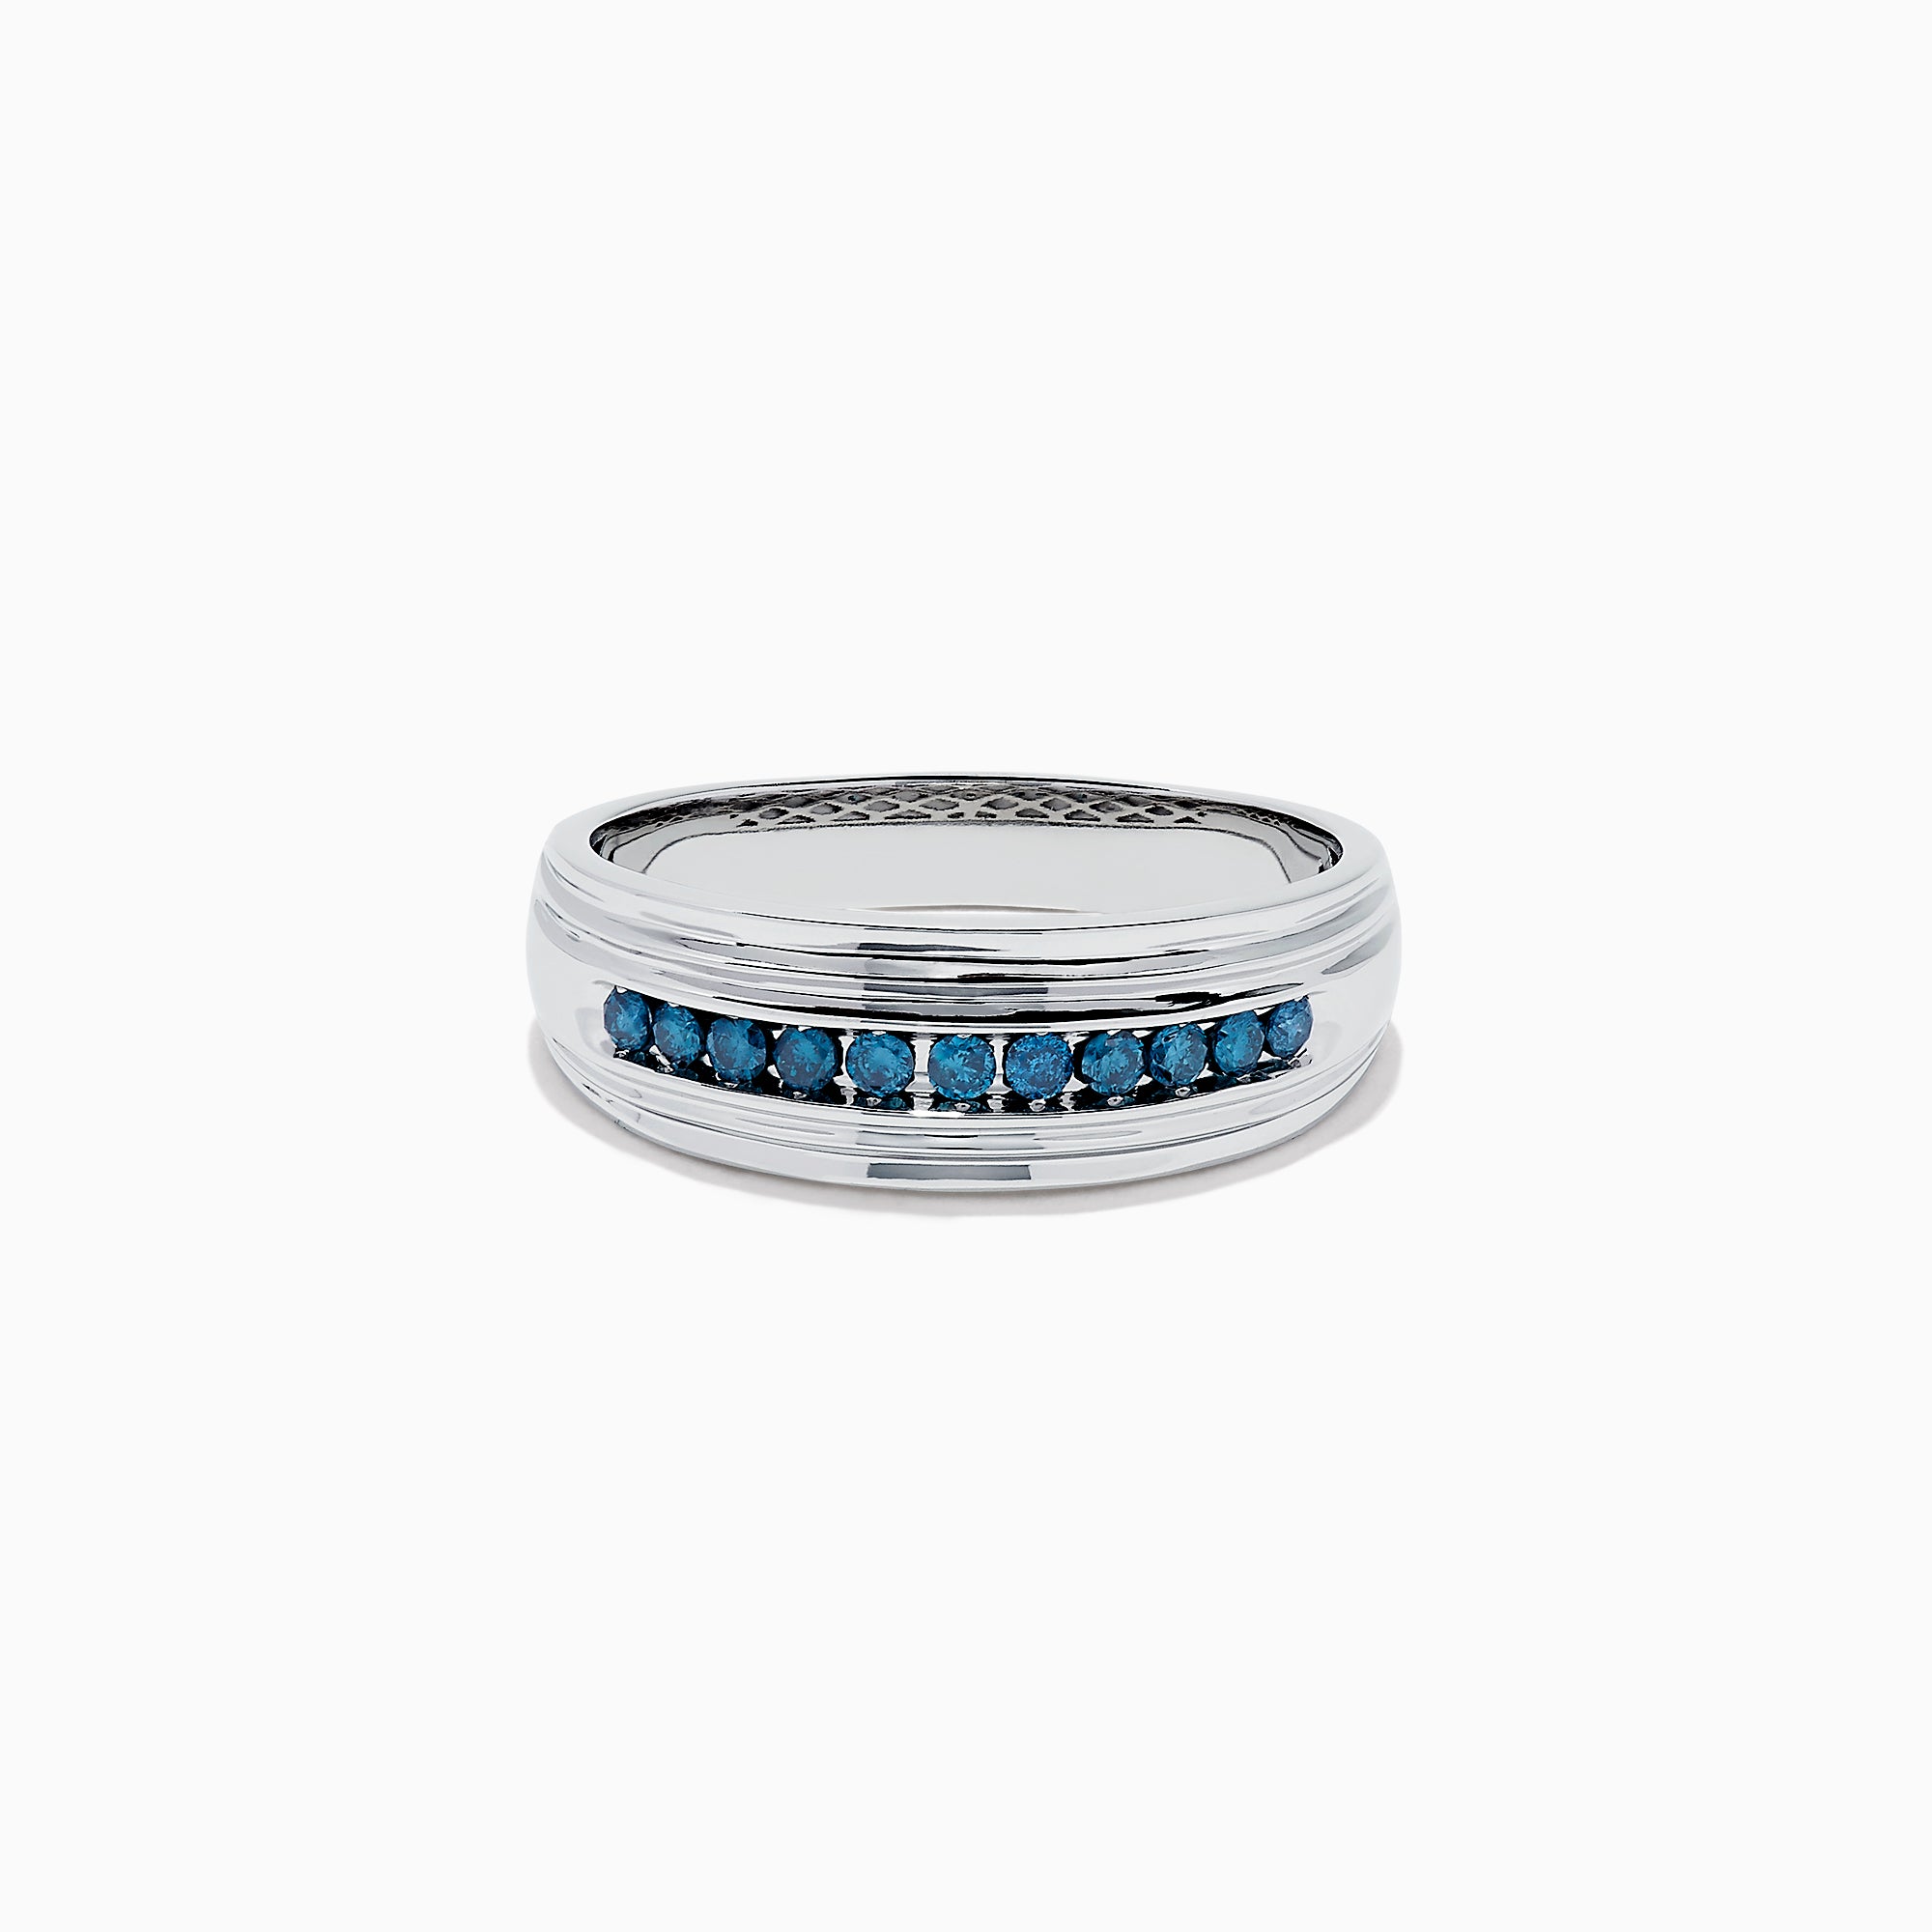 Effy Men's 14K White Gold Blue Diamond Ring, 0.24 TCW